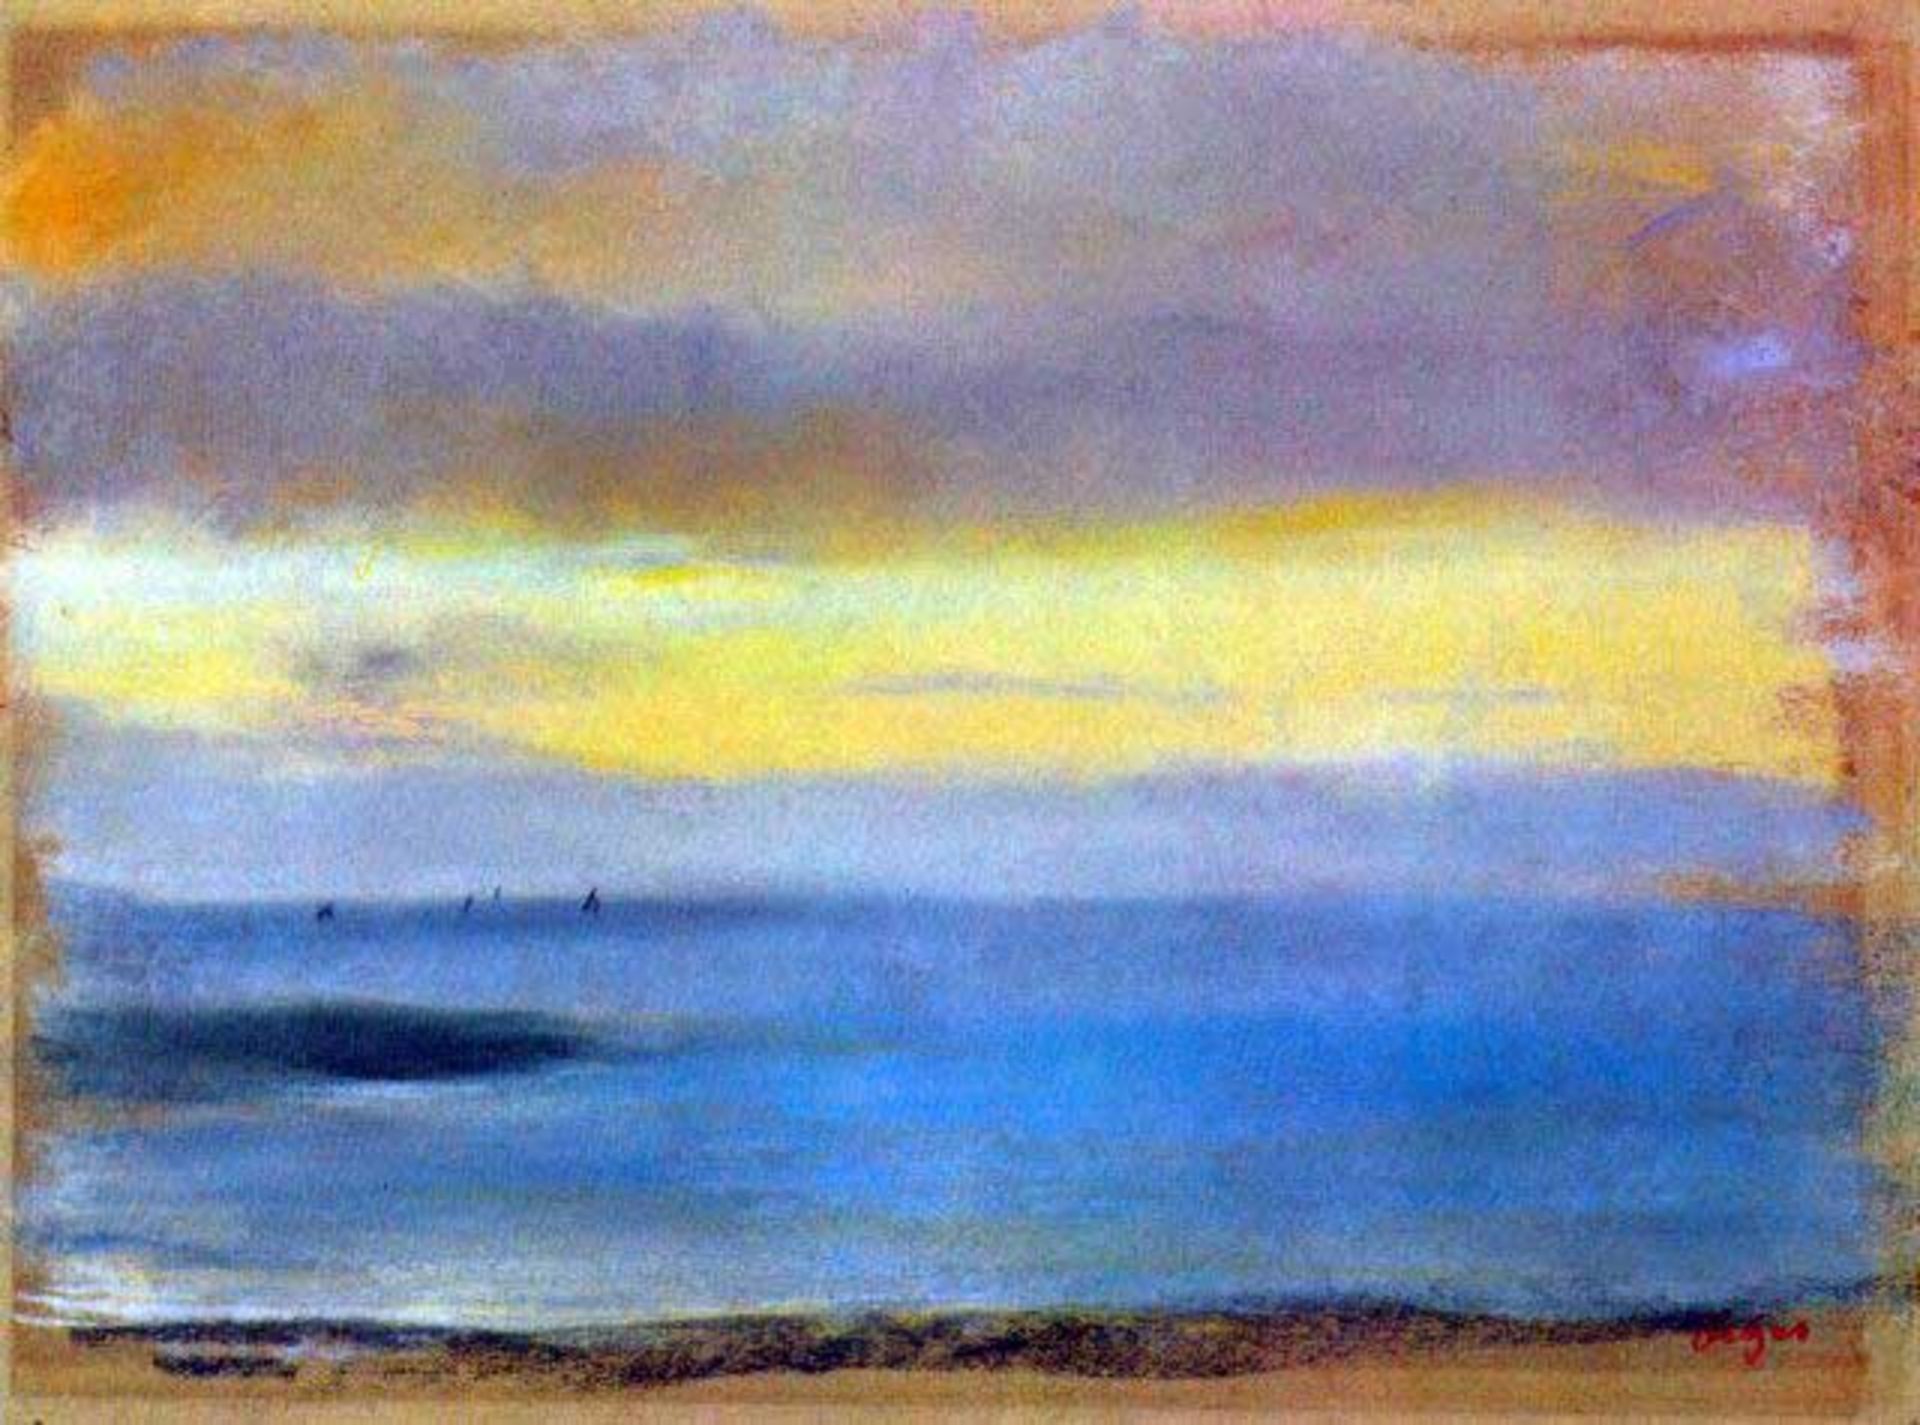 Edgar Degas - Coastal Strip At Sunset